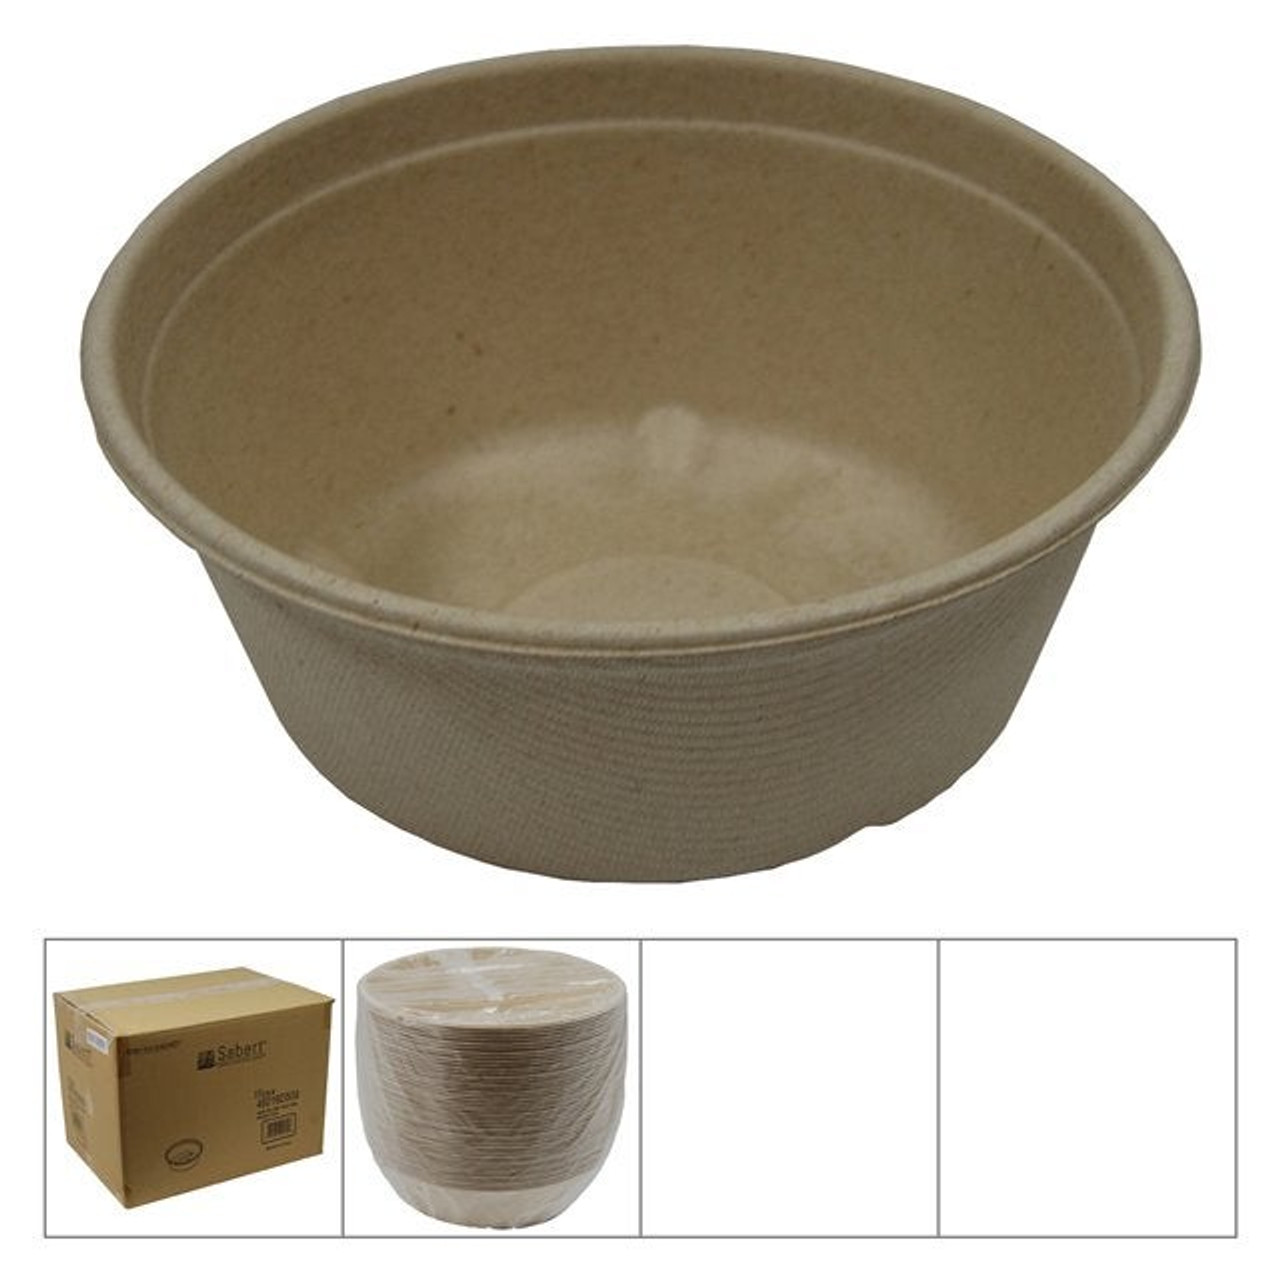 Sabert 16oz Natural Bagasse Paper Bowls, Ecology Friendly | 500UN/Unit, 1 Unit/Case